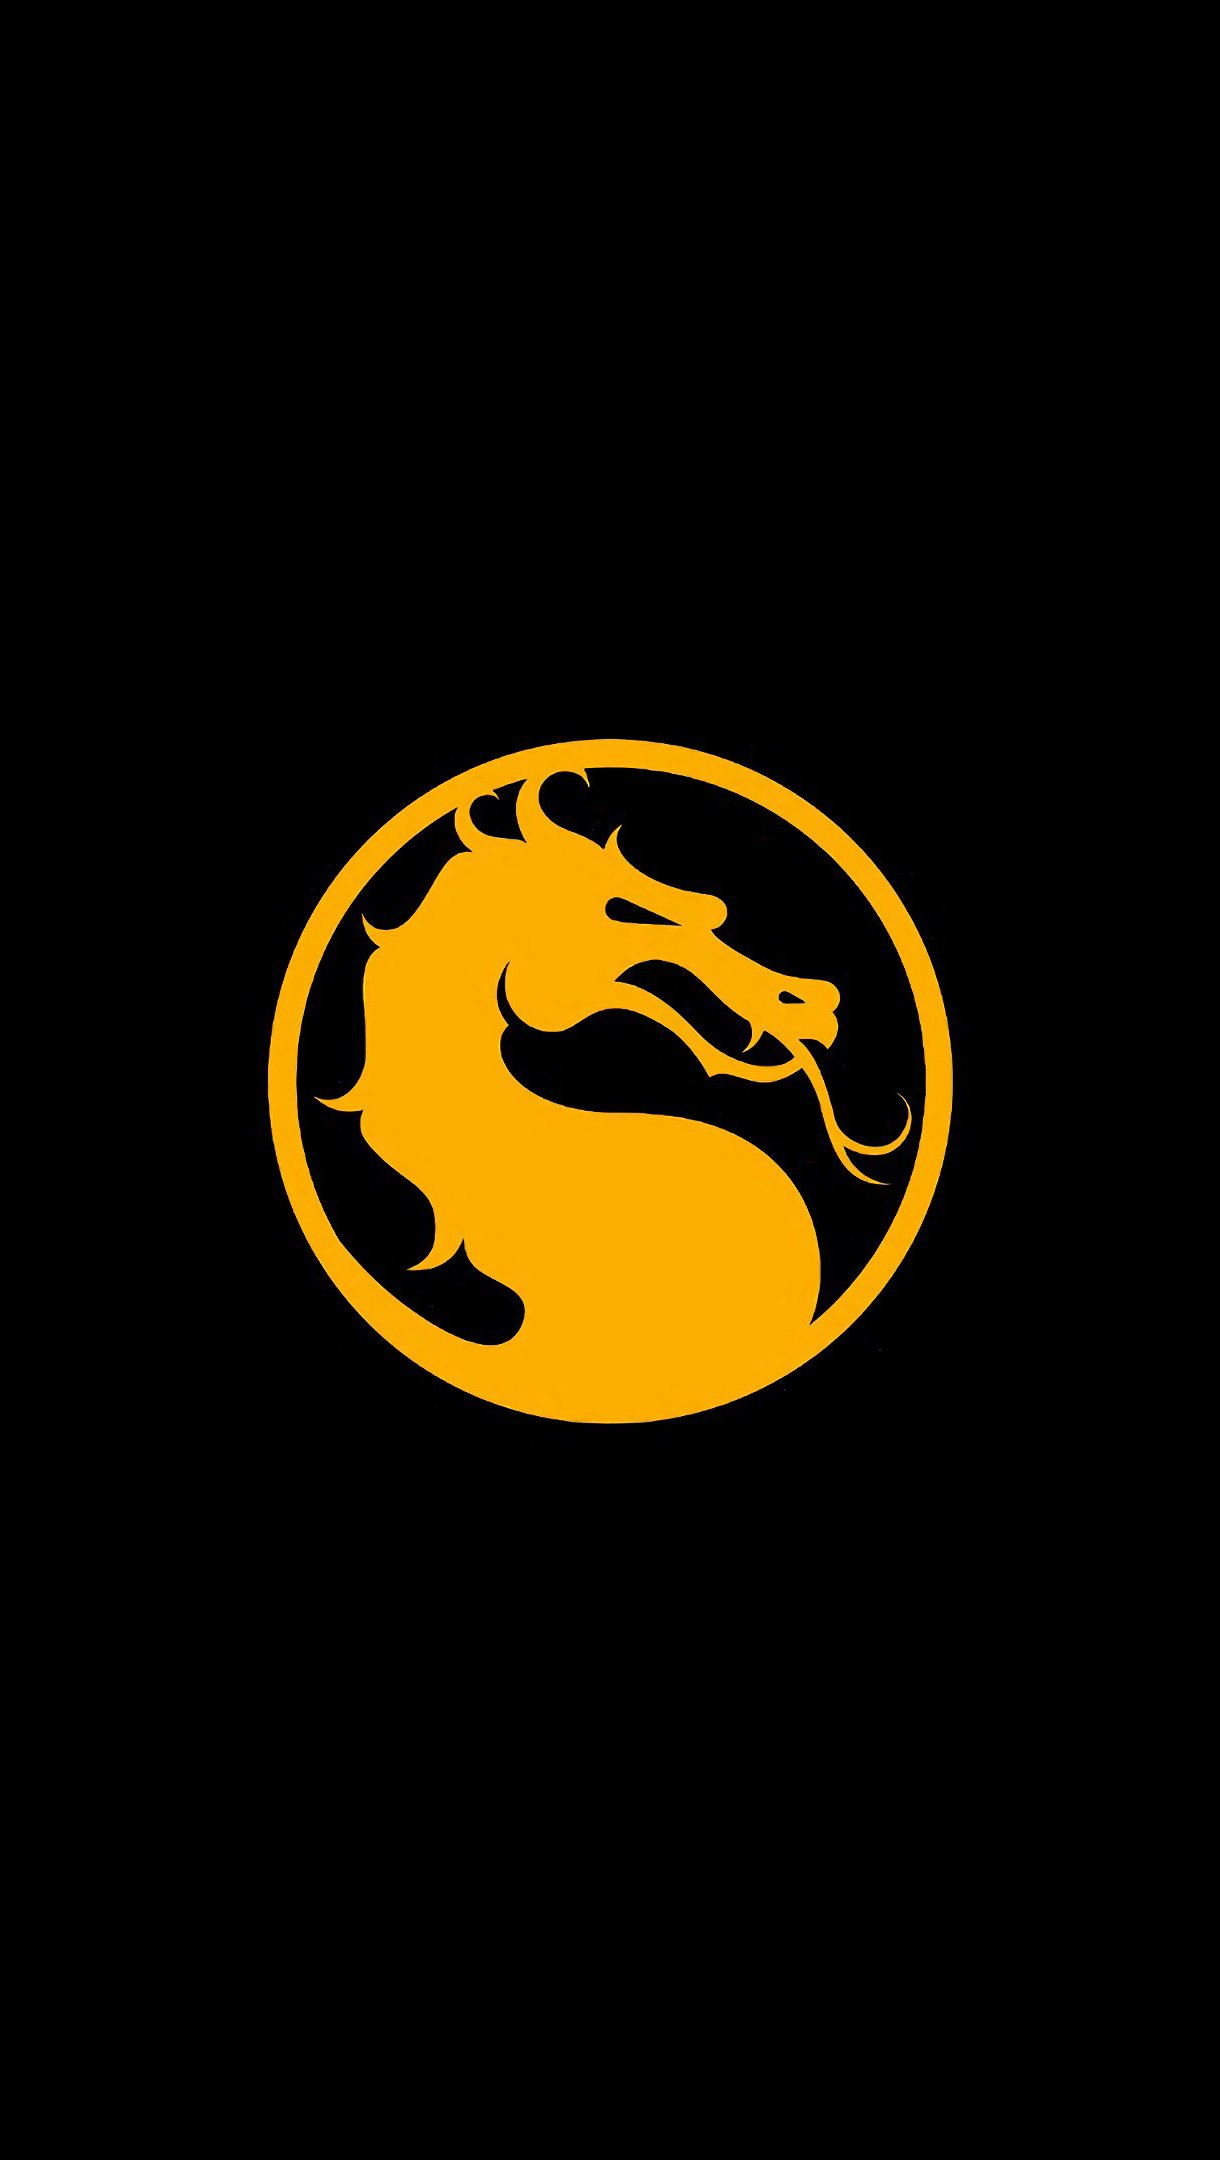 Mortal Kombat 11 Logo Dragon Wallpaper 4k Ultra HD ID:3176